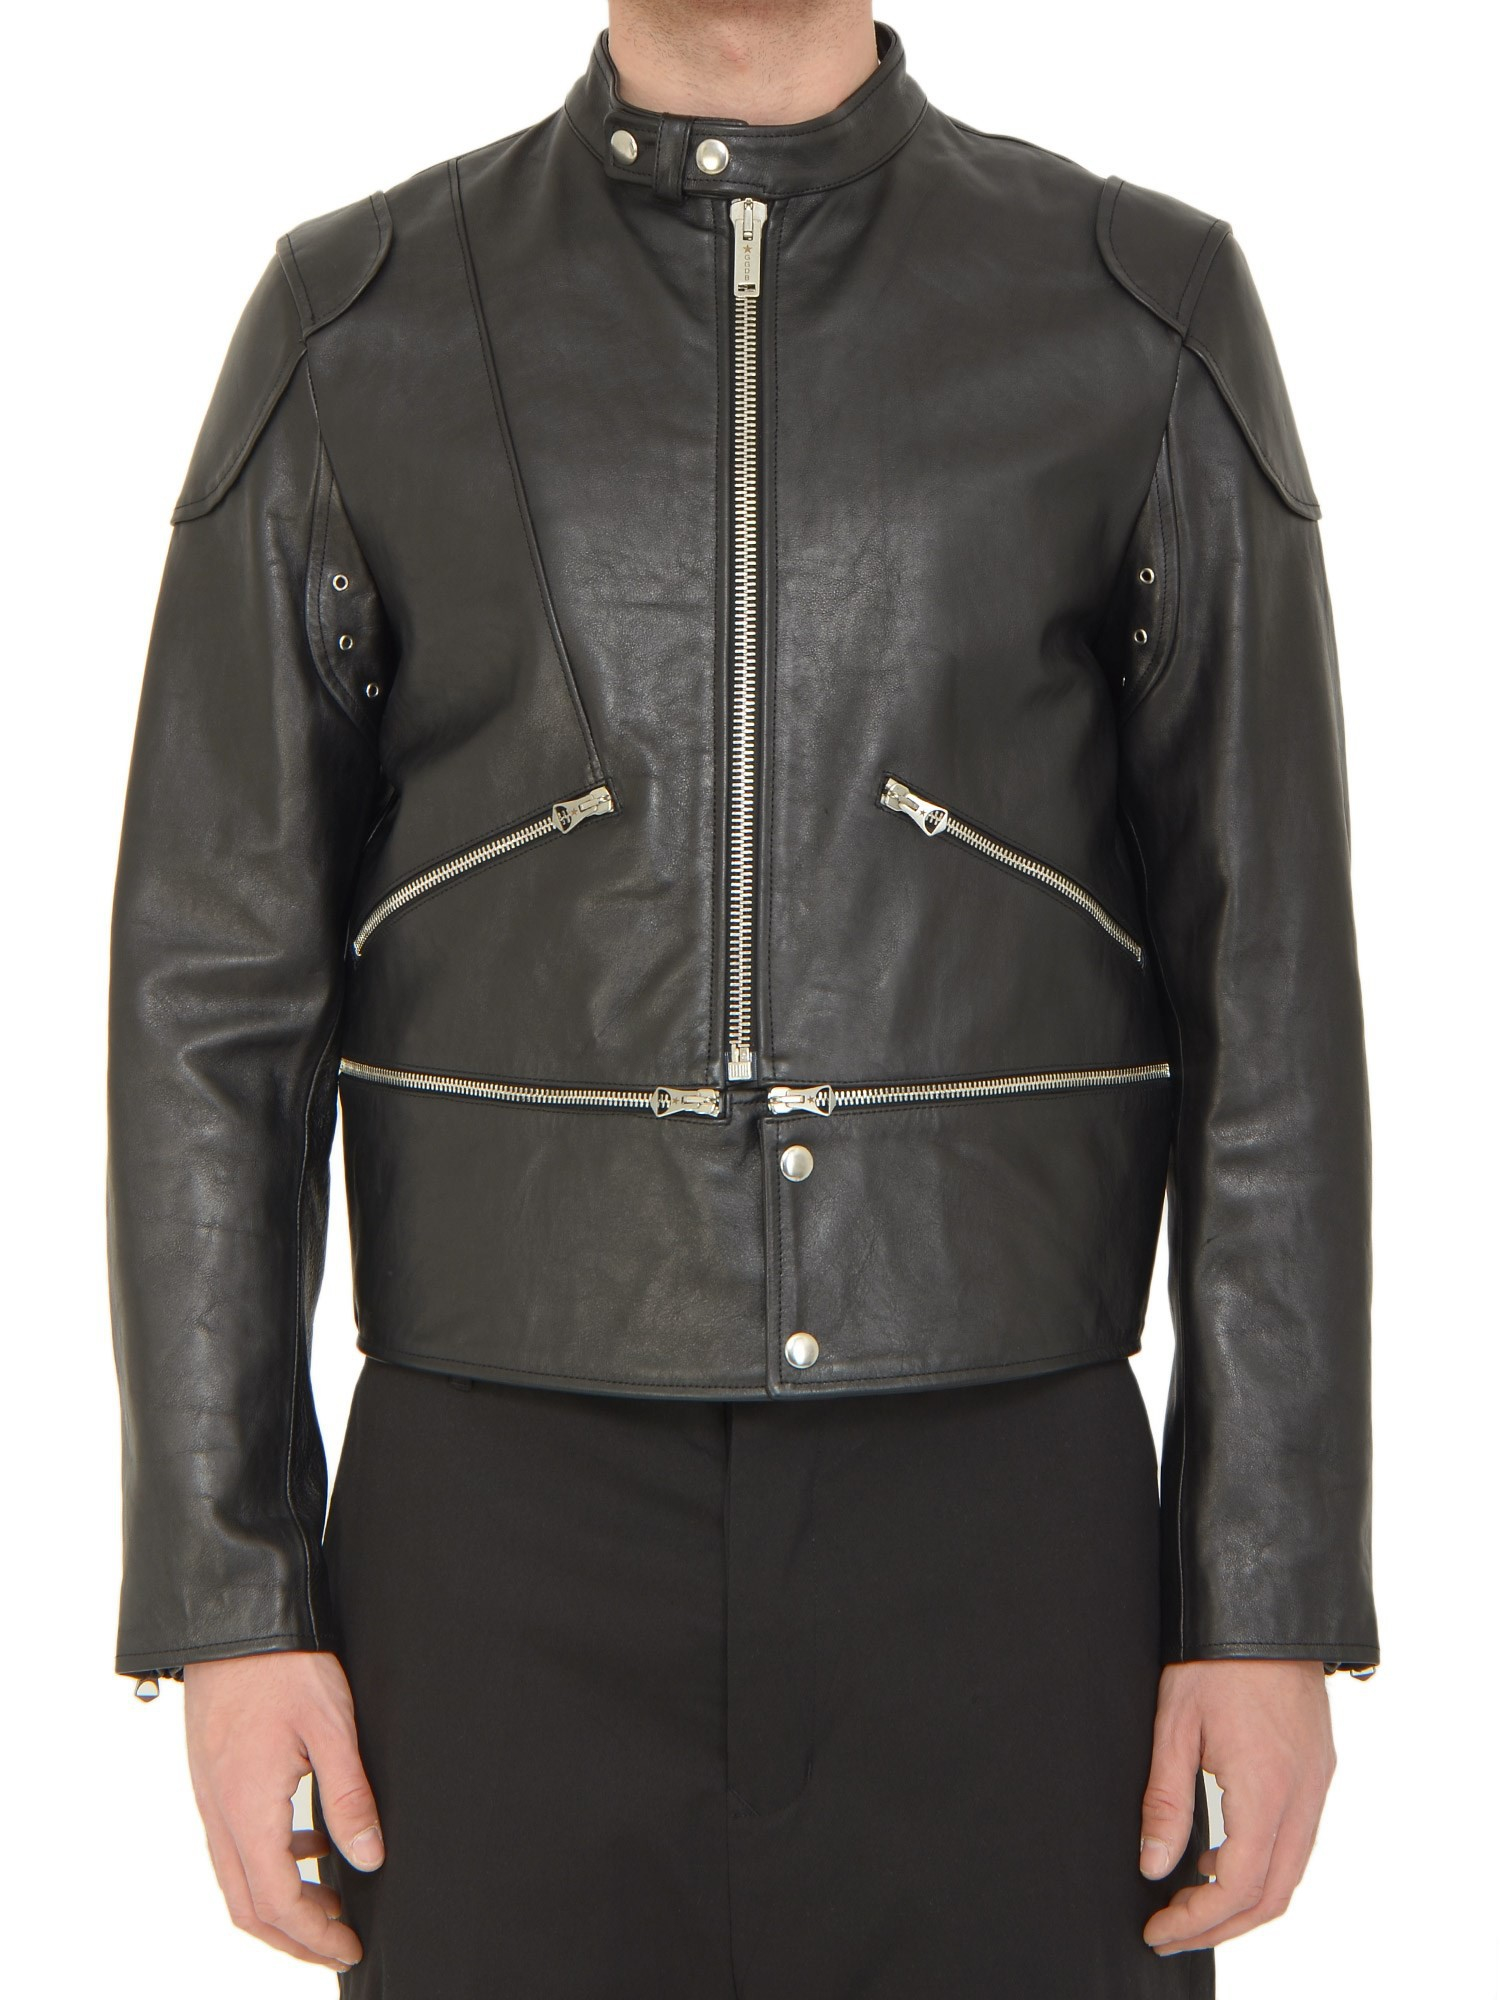 Black friday leather jacket sale – Modern fashion jacket photo blog